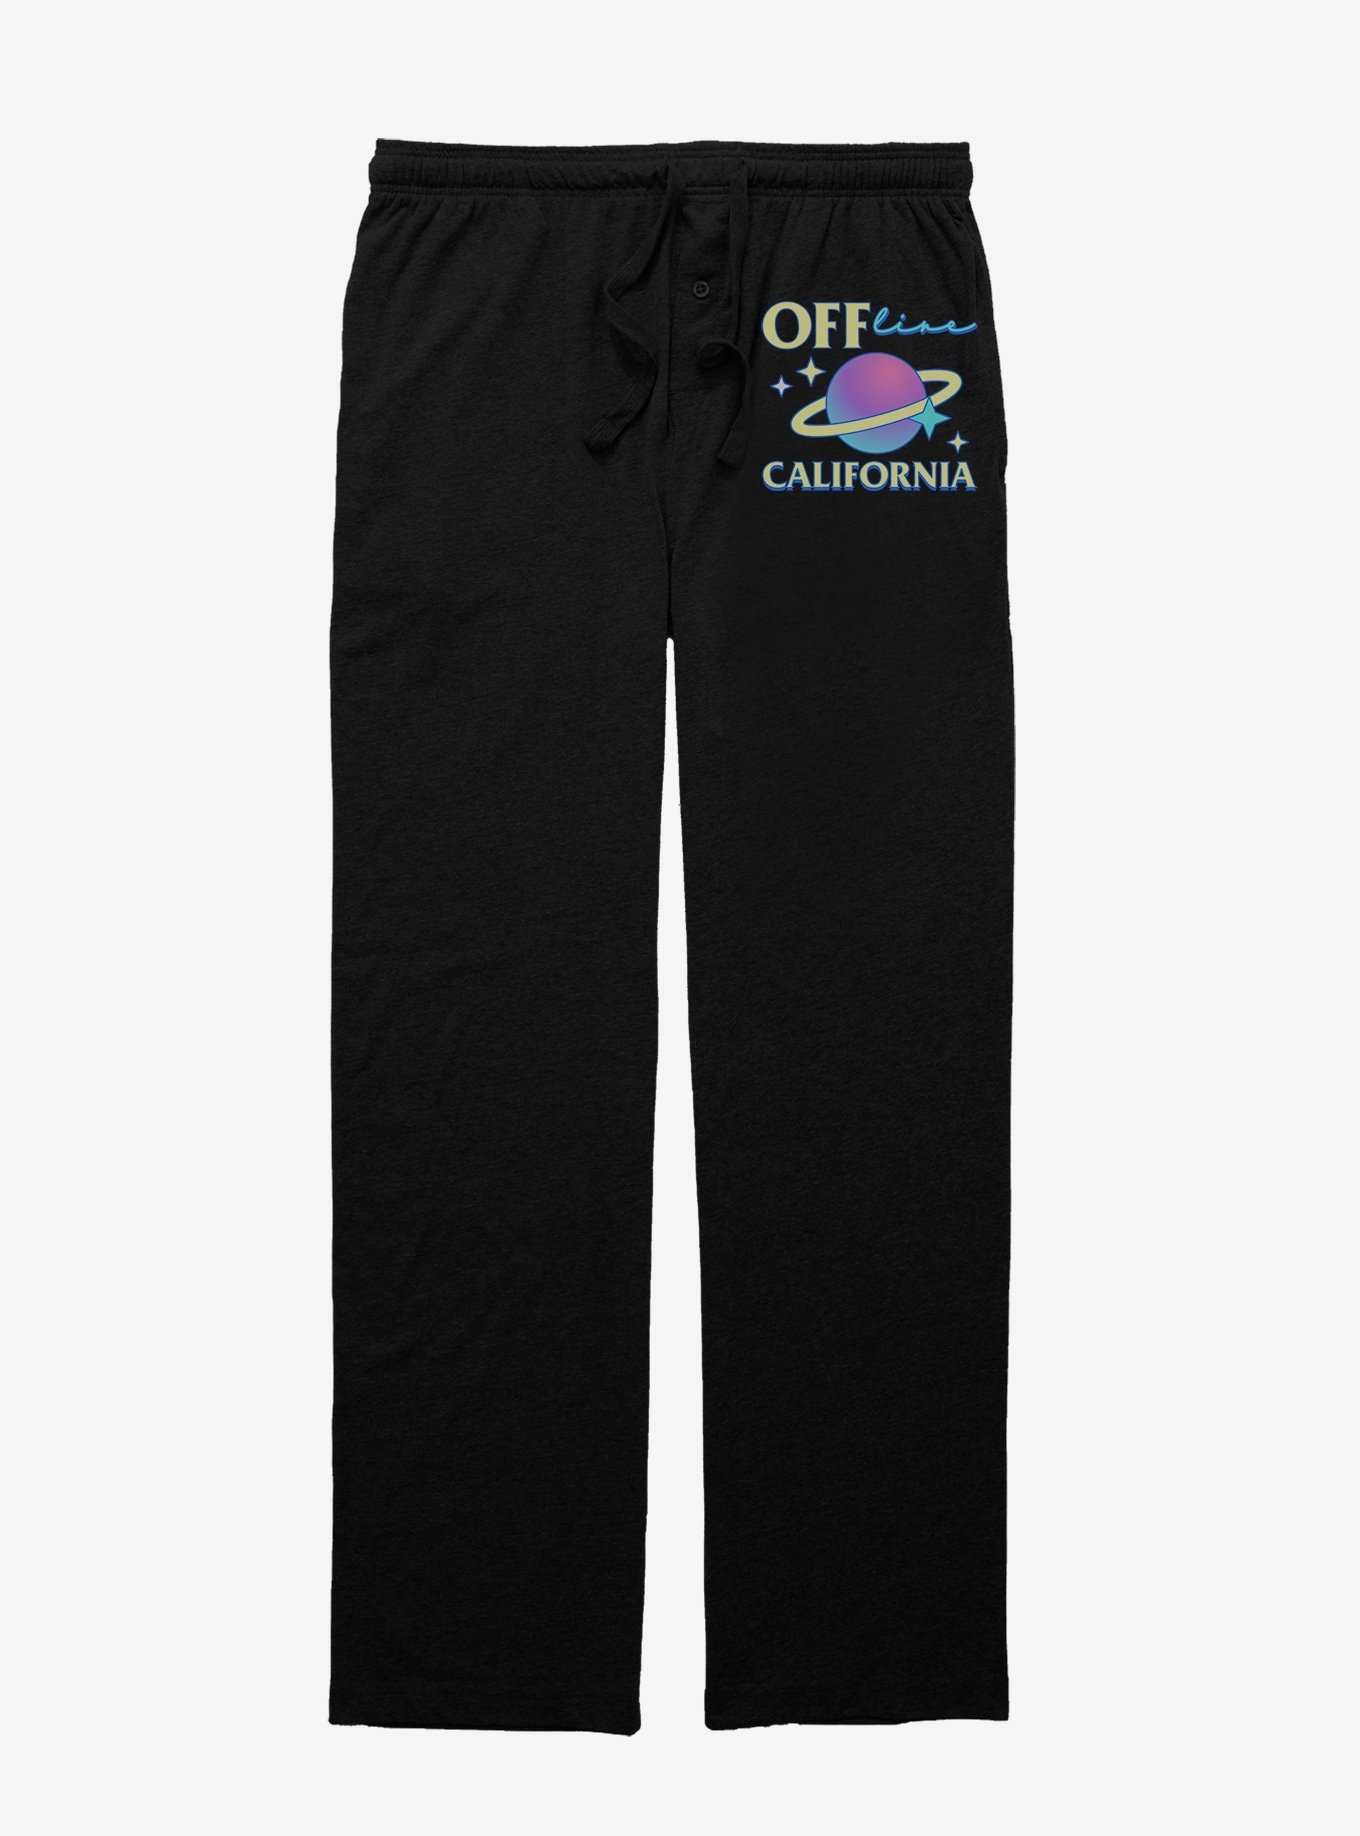 Offline California Pajama Pants, , hi-res